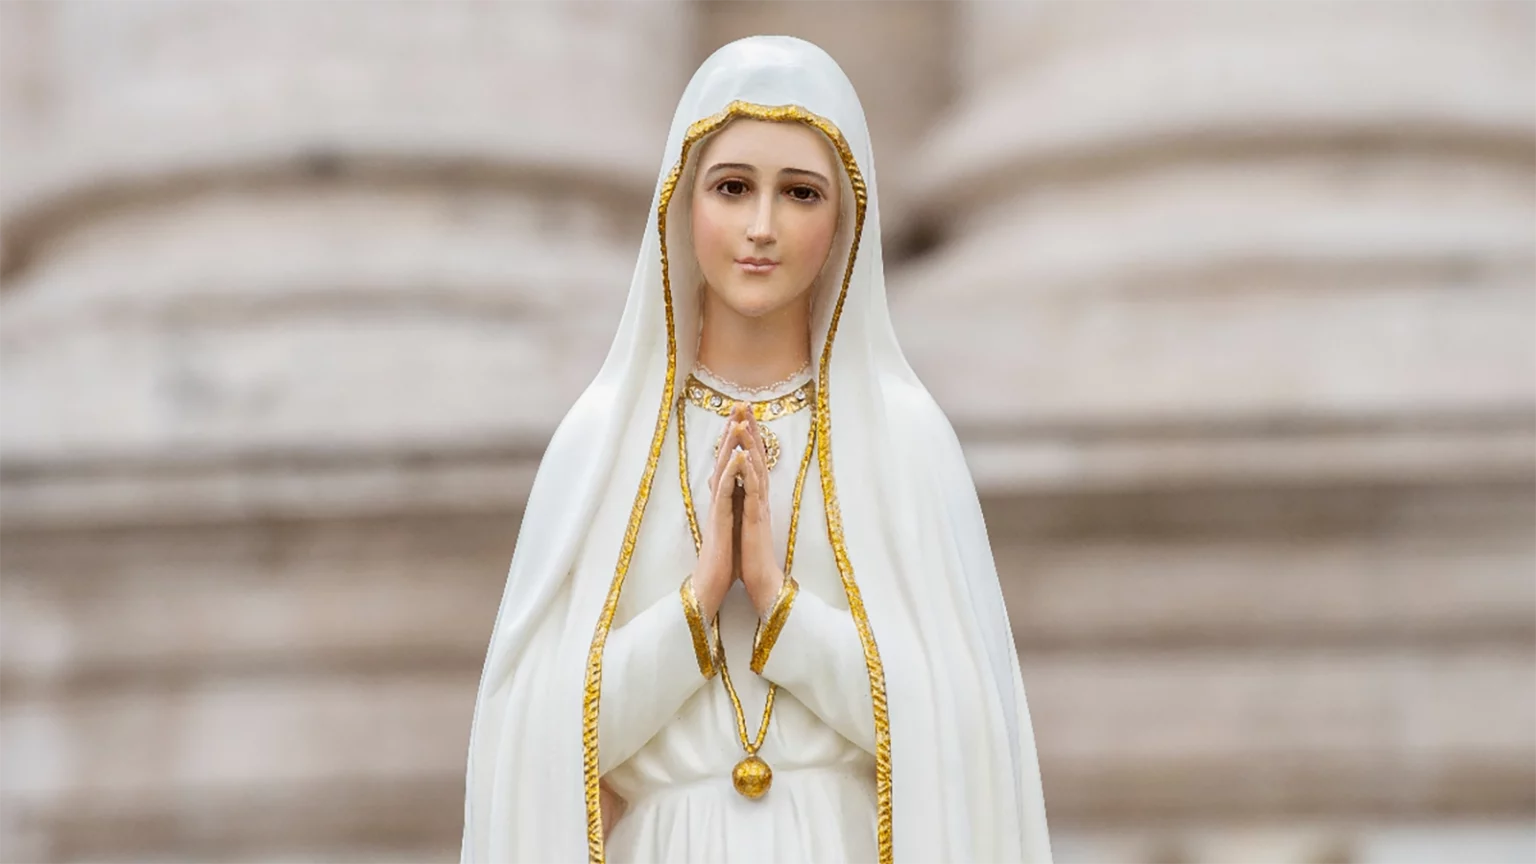 Poświęcenie Świata Niepokalanemu Sercu Maryi, Jan Paweł II, Fatima 13 Maja 1982, Watykan 16 Października 1983, Watykan 25 Marca 1984